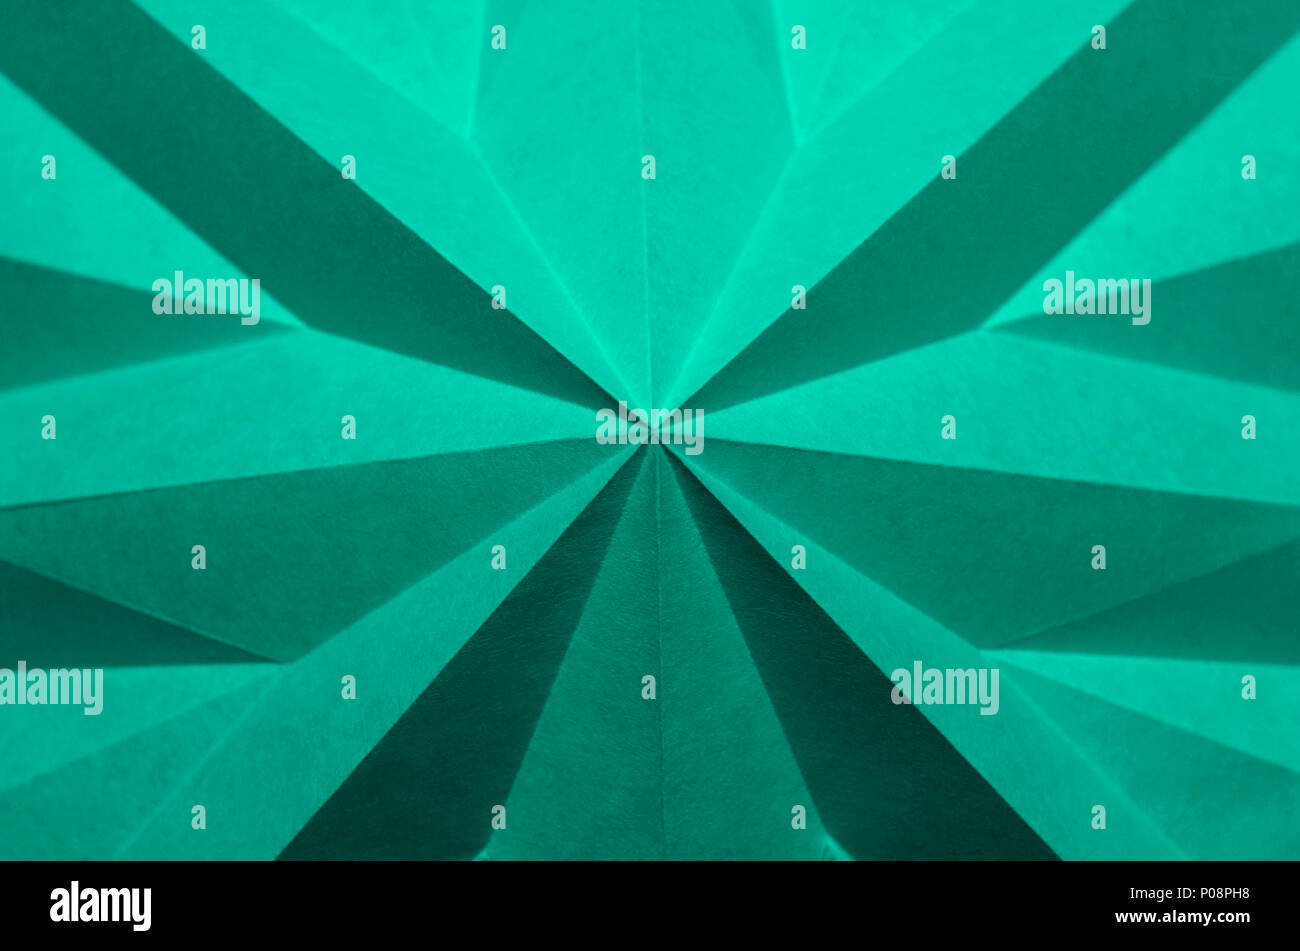 Fondo de pantalla verde azulado fotografías e imágenes de alta resolución -  Alamy